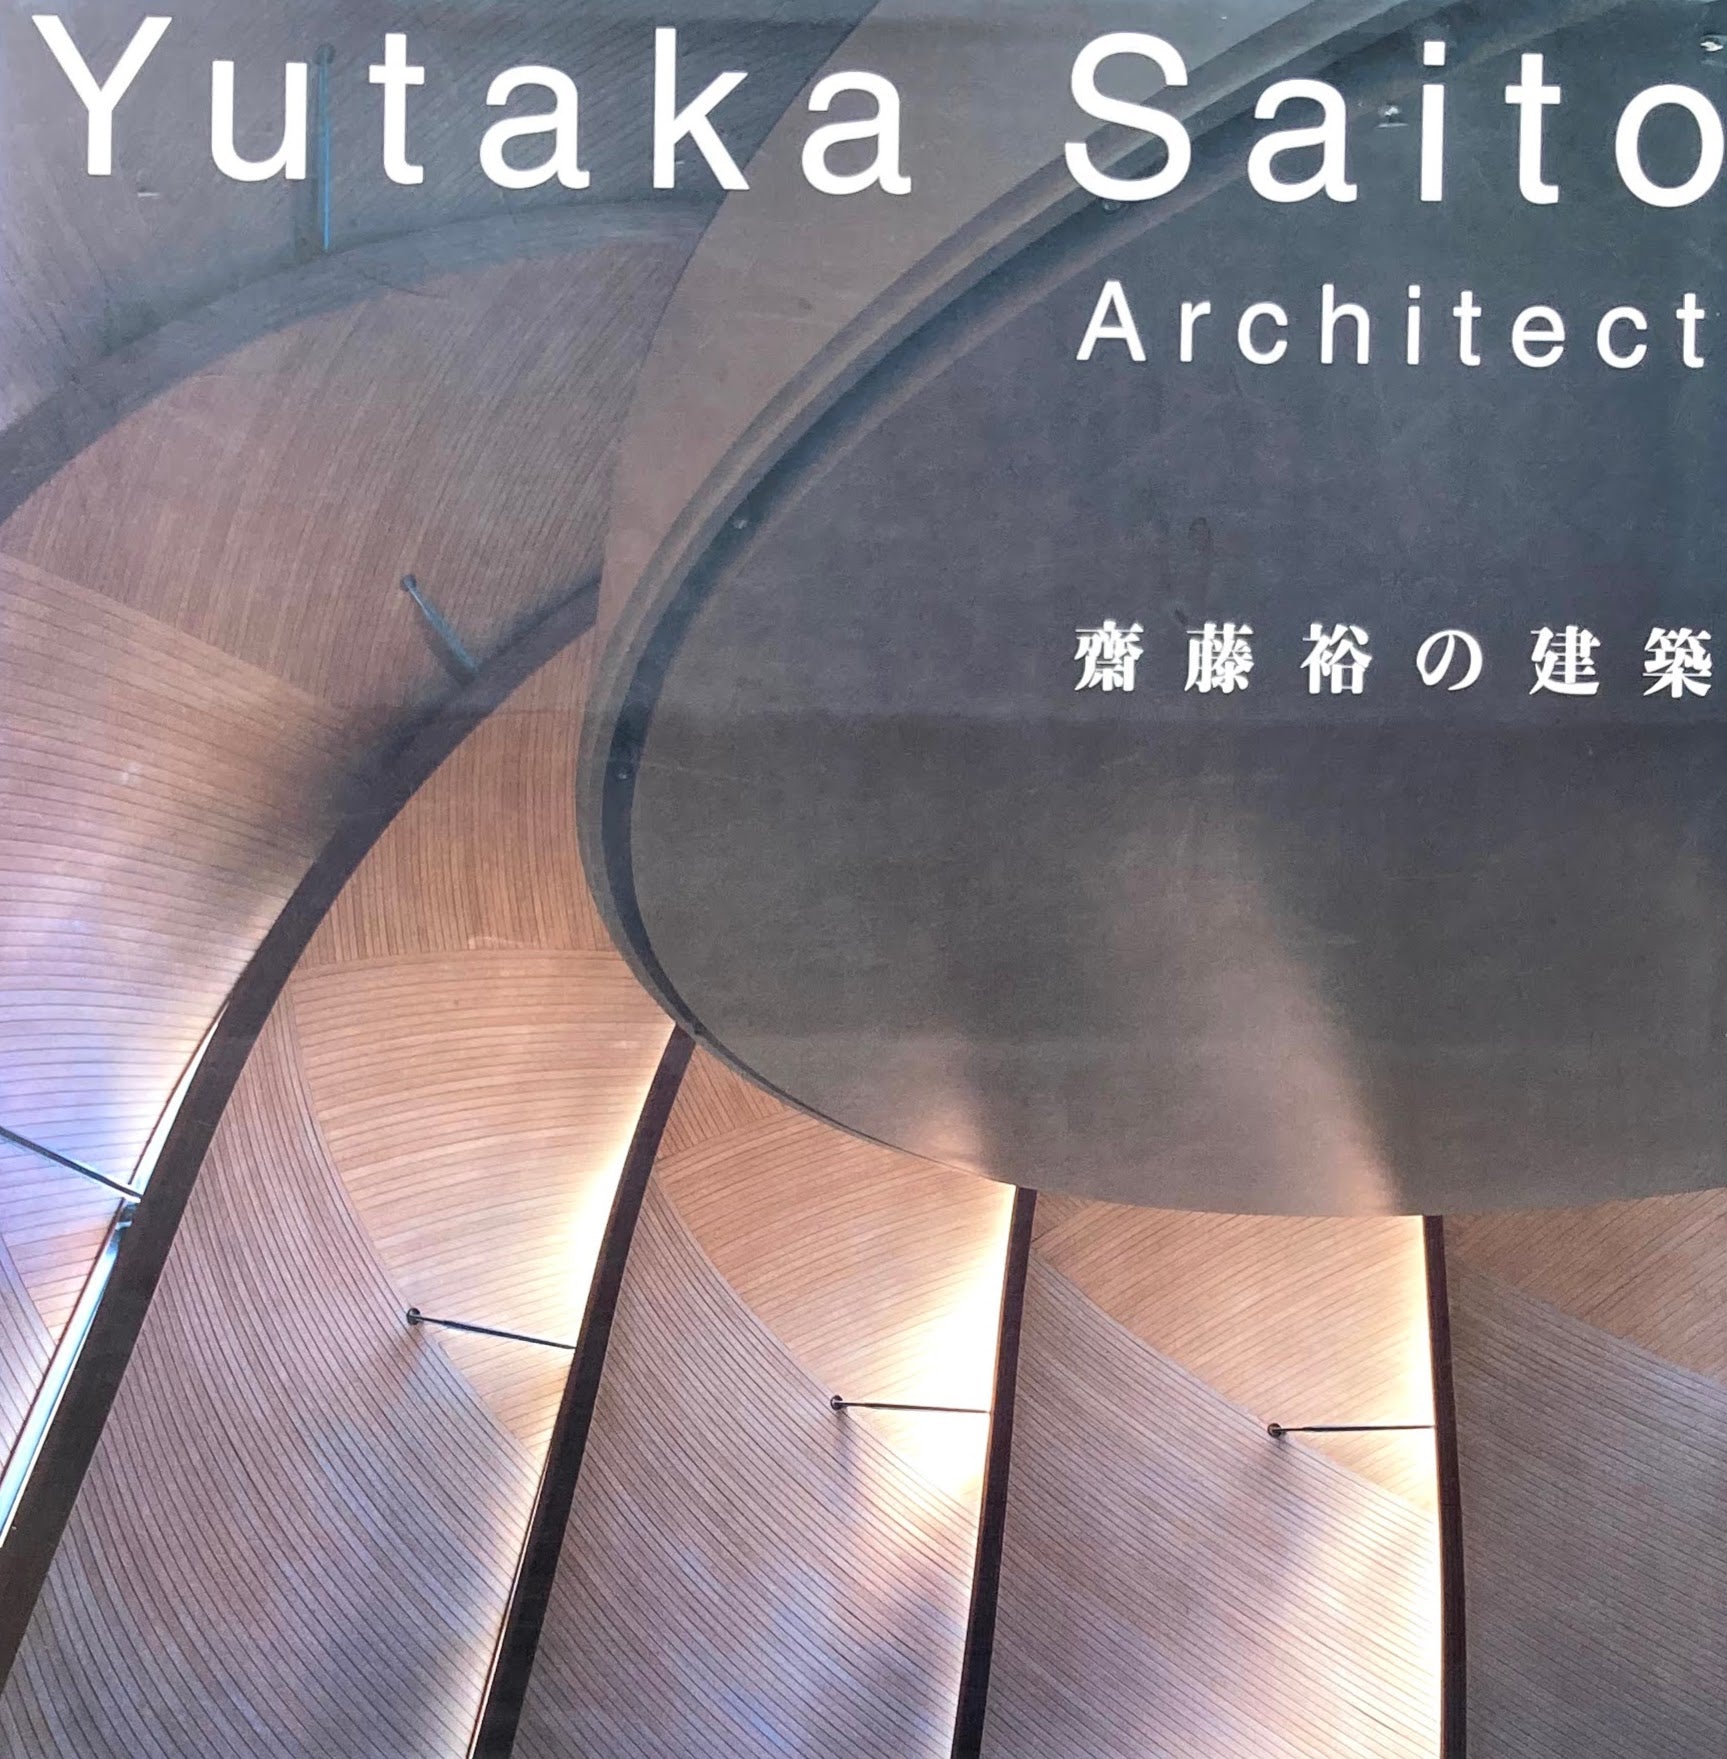 齋藤裕の建築 Yutaka Saito Architect Smokebooks 美術 デザイン 古書店